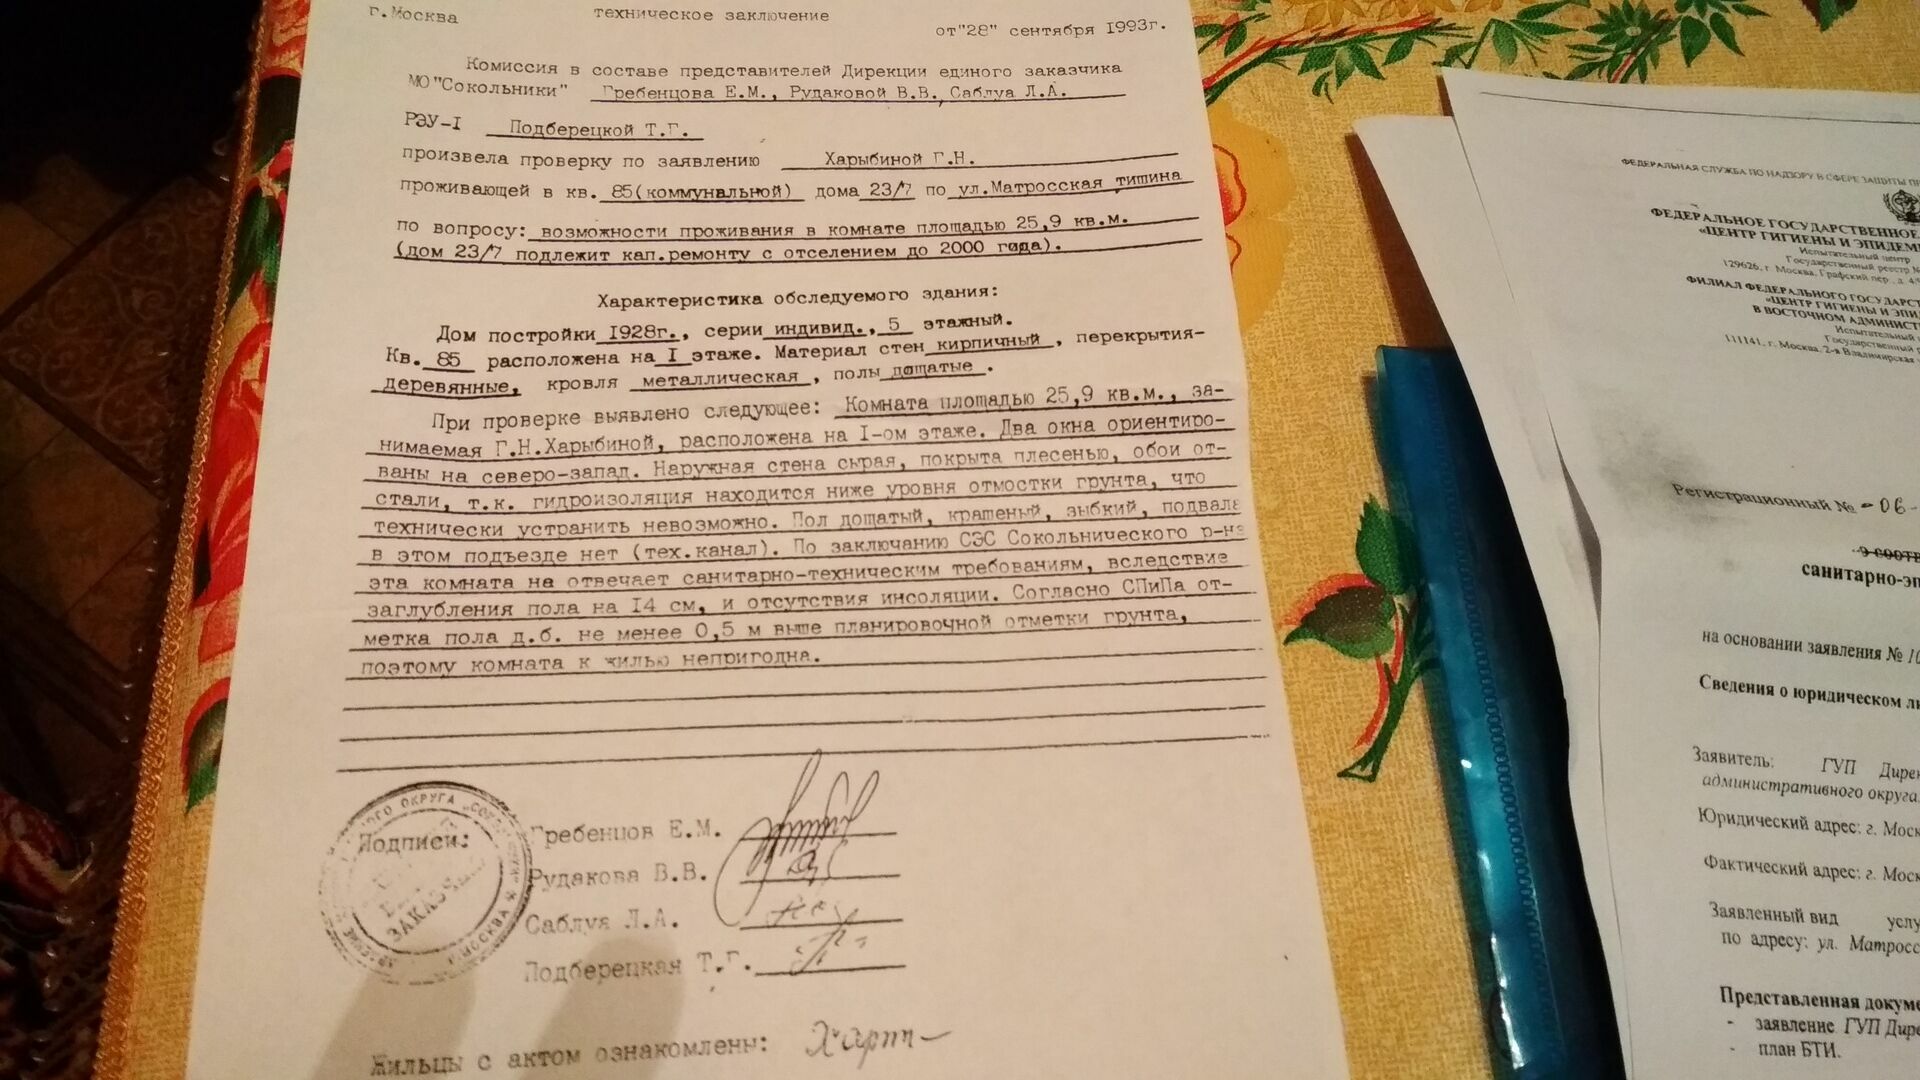 Комната Галины Харыбиной признана "непригодной для жилья"